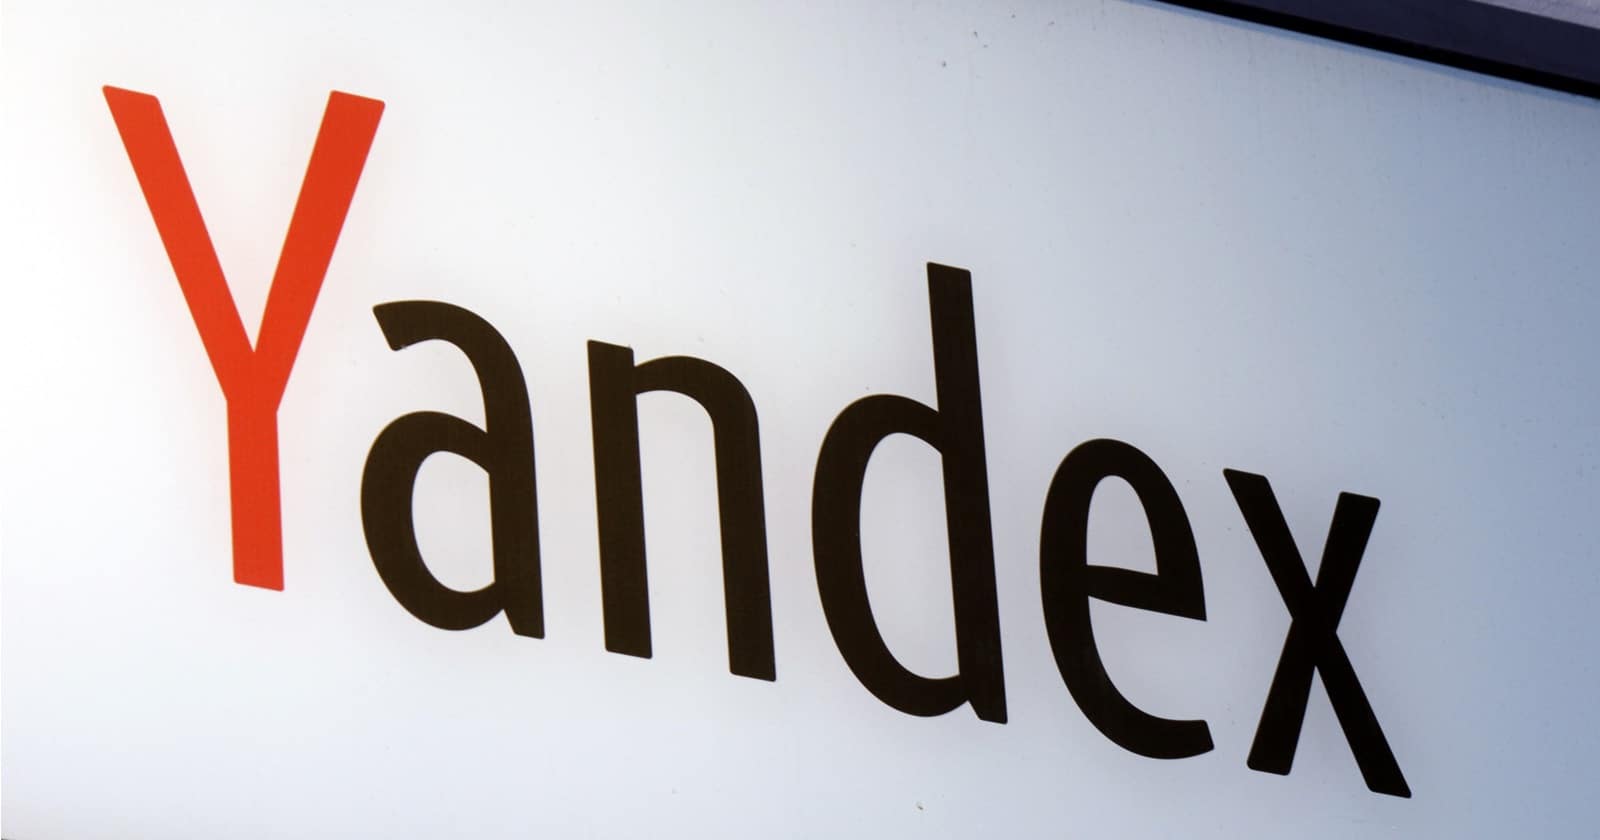 Yandex sort un nouveau service vidéo